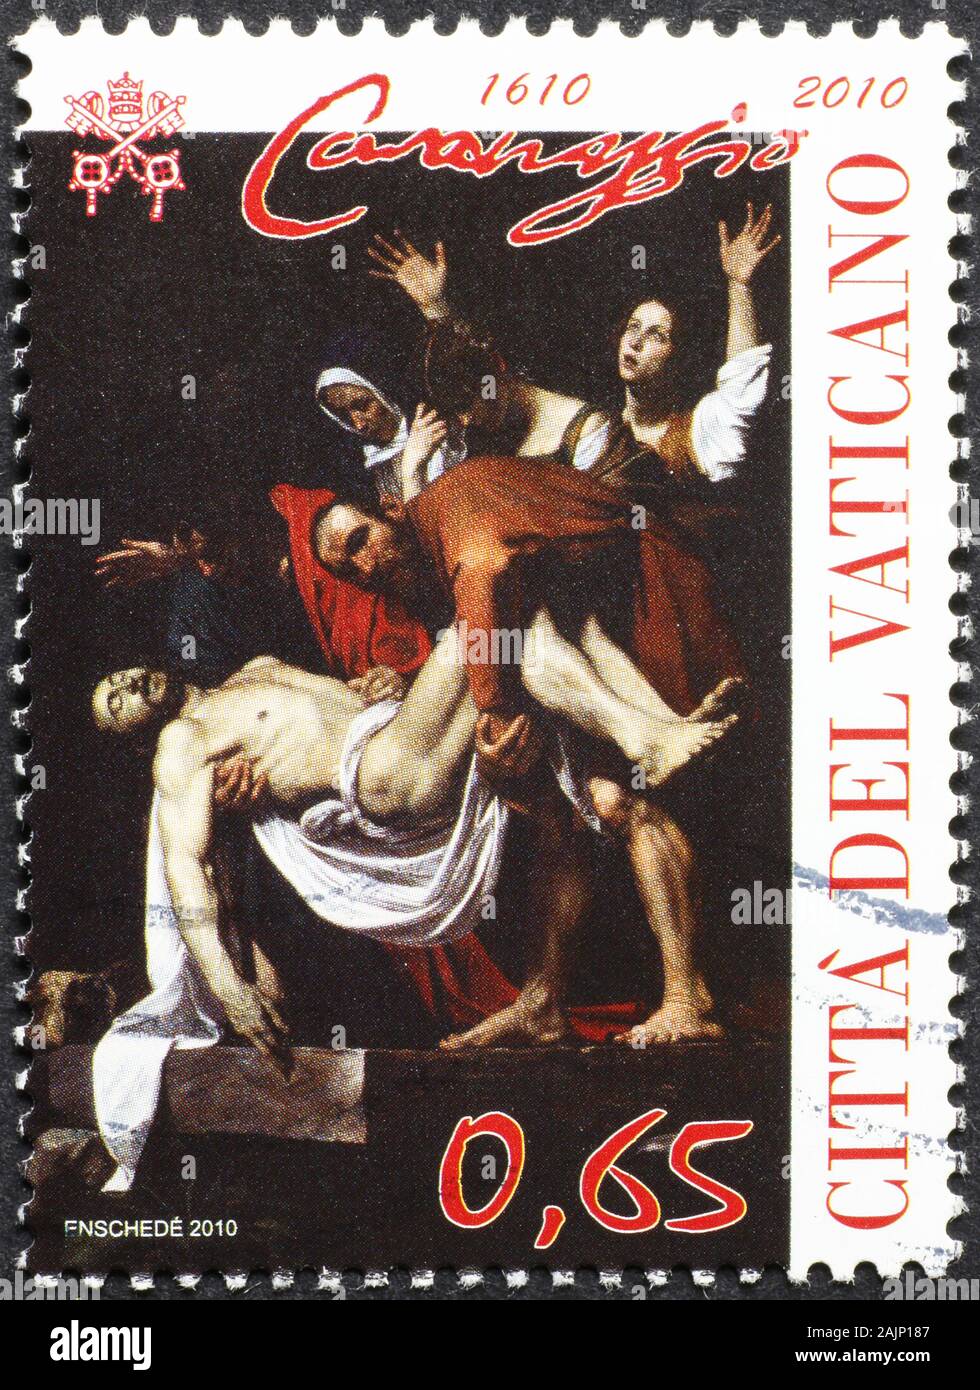 Obra maestra de Caravaggio en el sello de la Ciudad del Vaticano Foto de stock